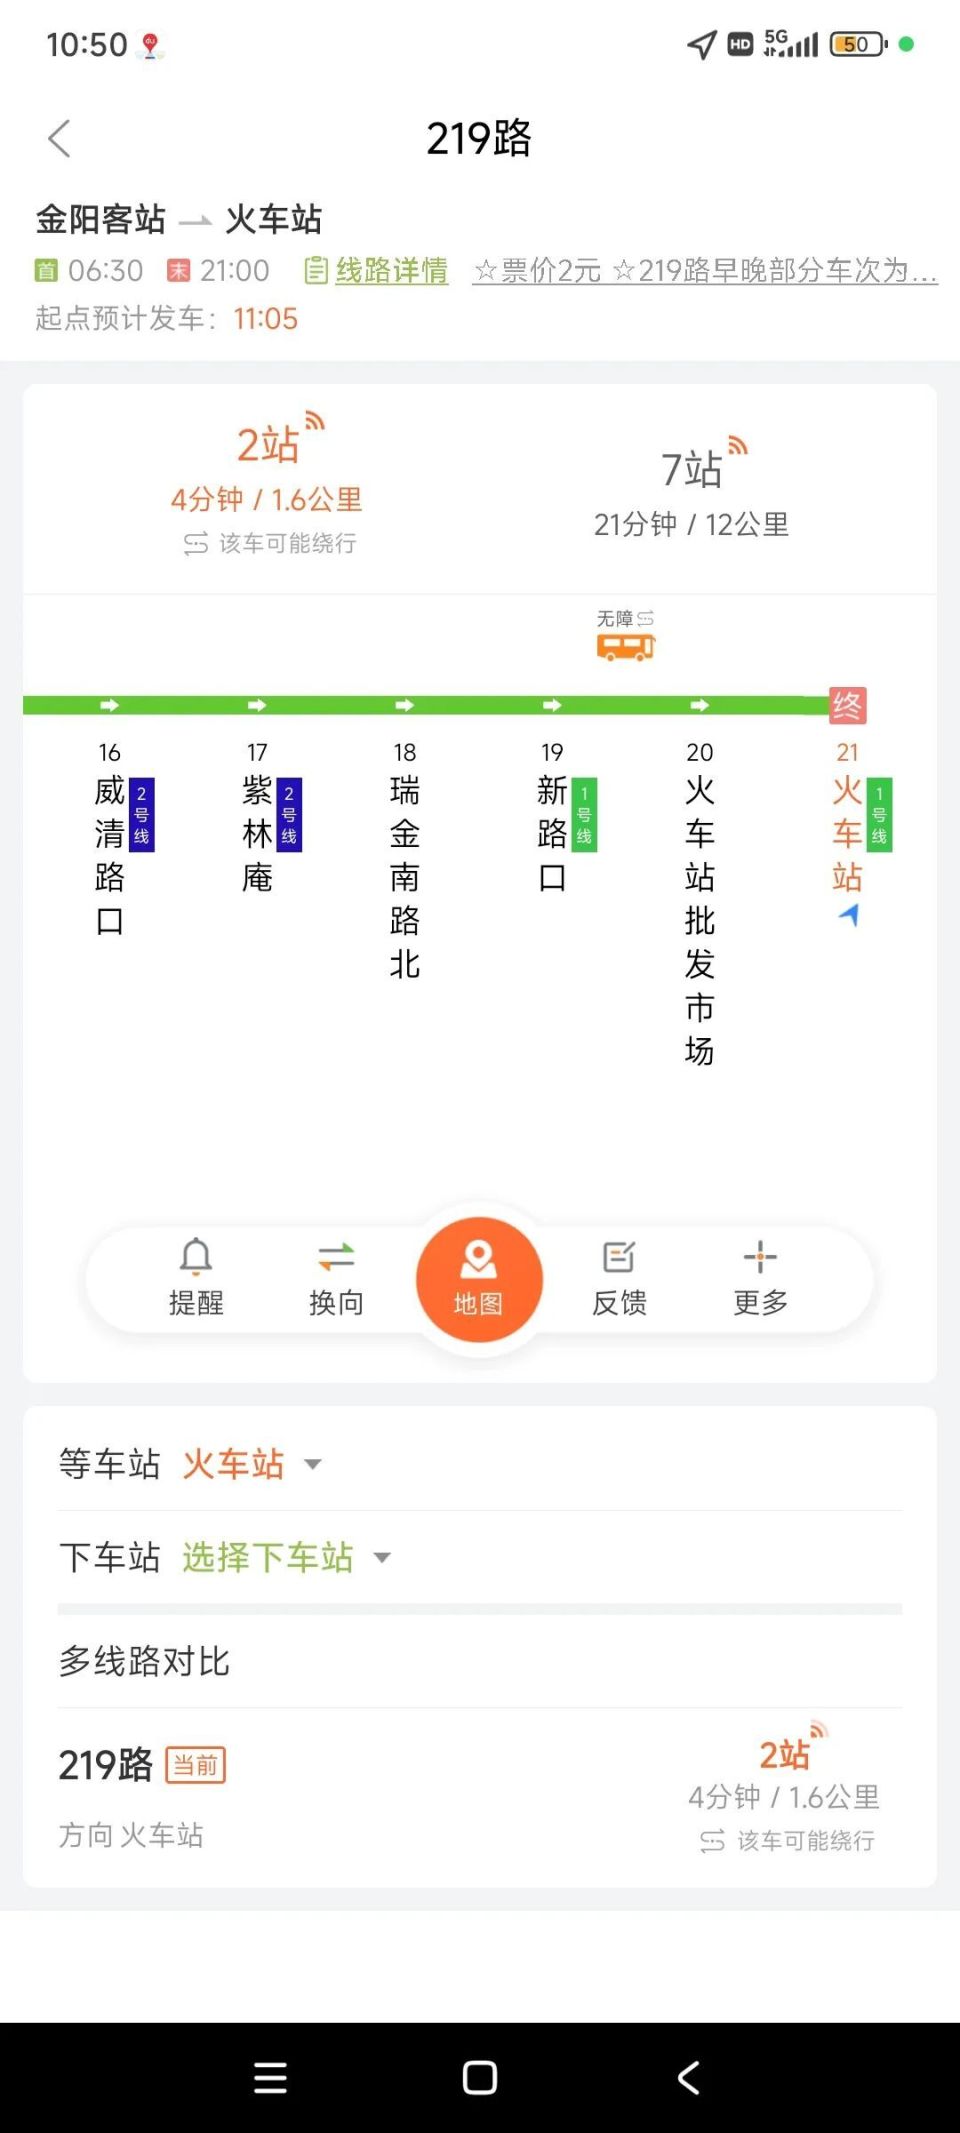 因配合贵阳火车站附近改造,219路公交线路有变化